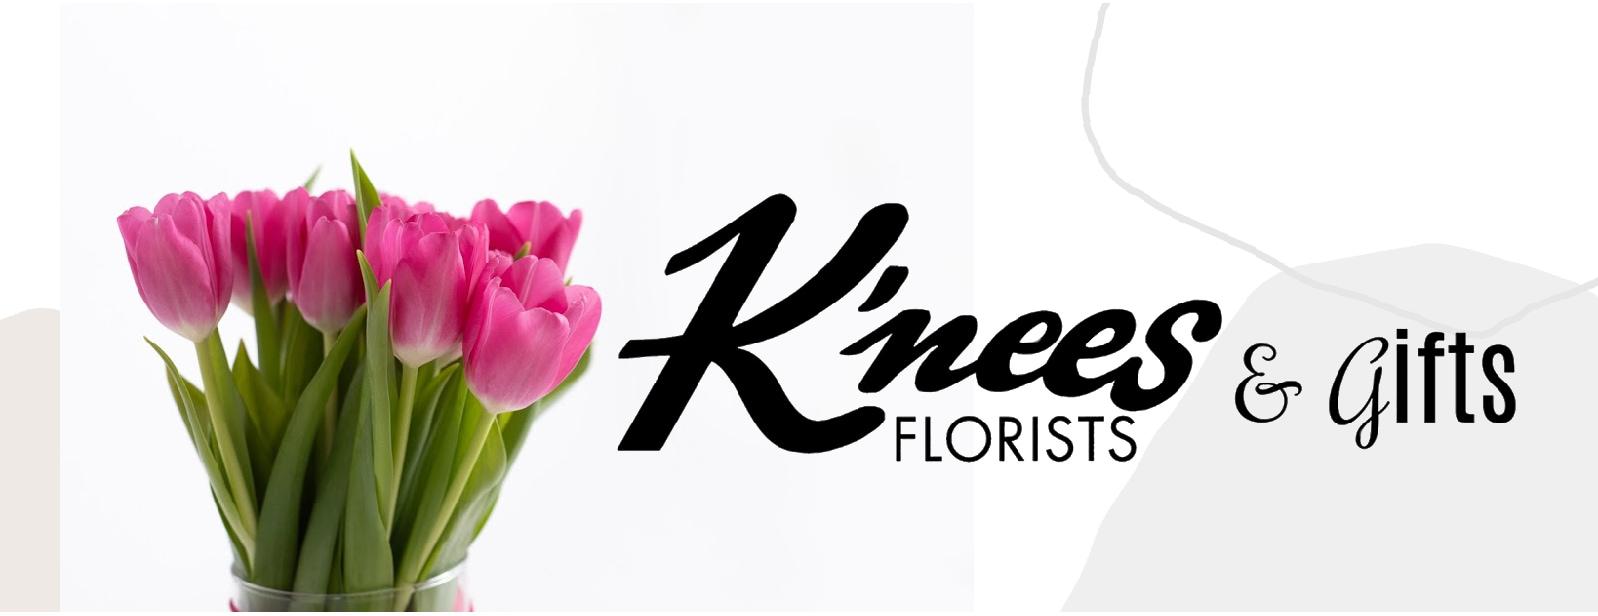 K'nees Florists - Moline, IL 61265 - (309)764-7479 | ShowMeLocal.com